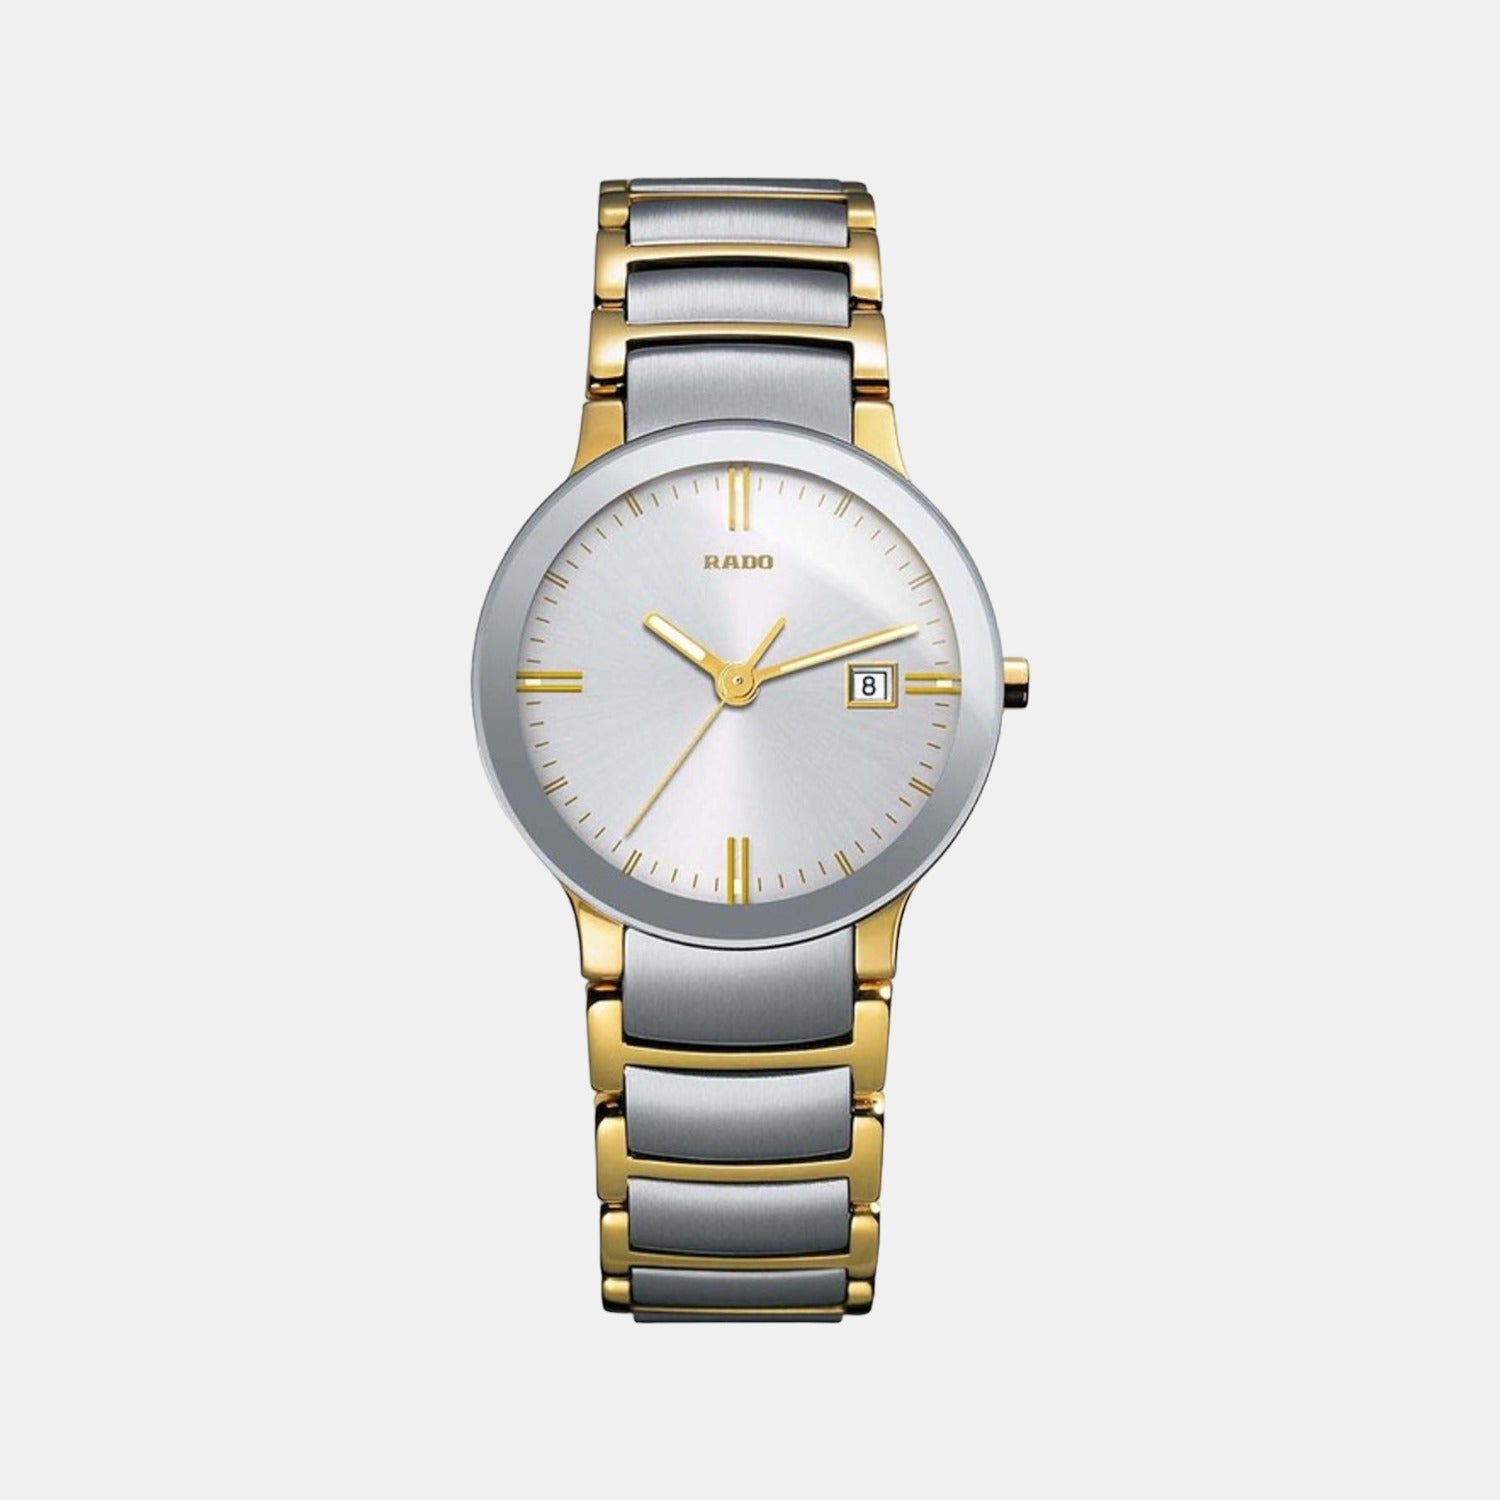 rado-stainless-steel-white-analog-men-watch-r30932103